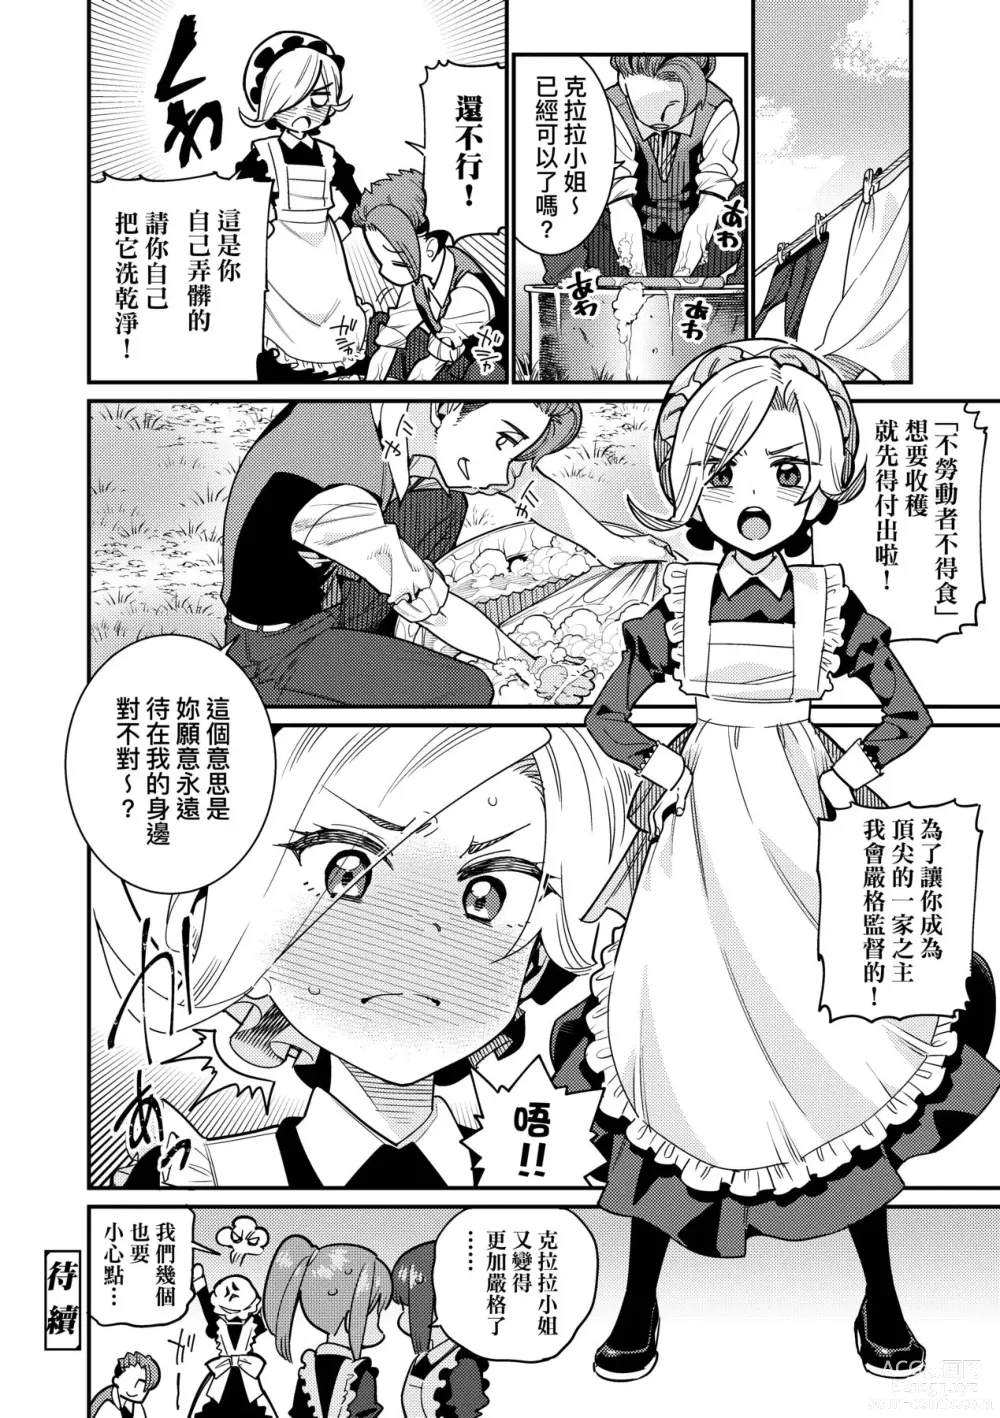 Page 25 of manga Itoshiki Wagaya (decensored)